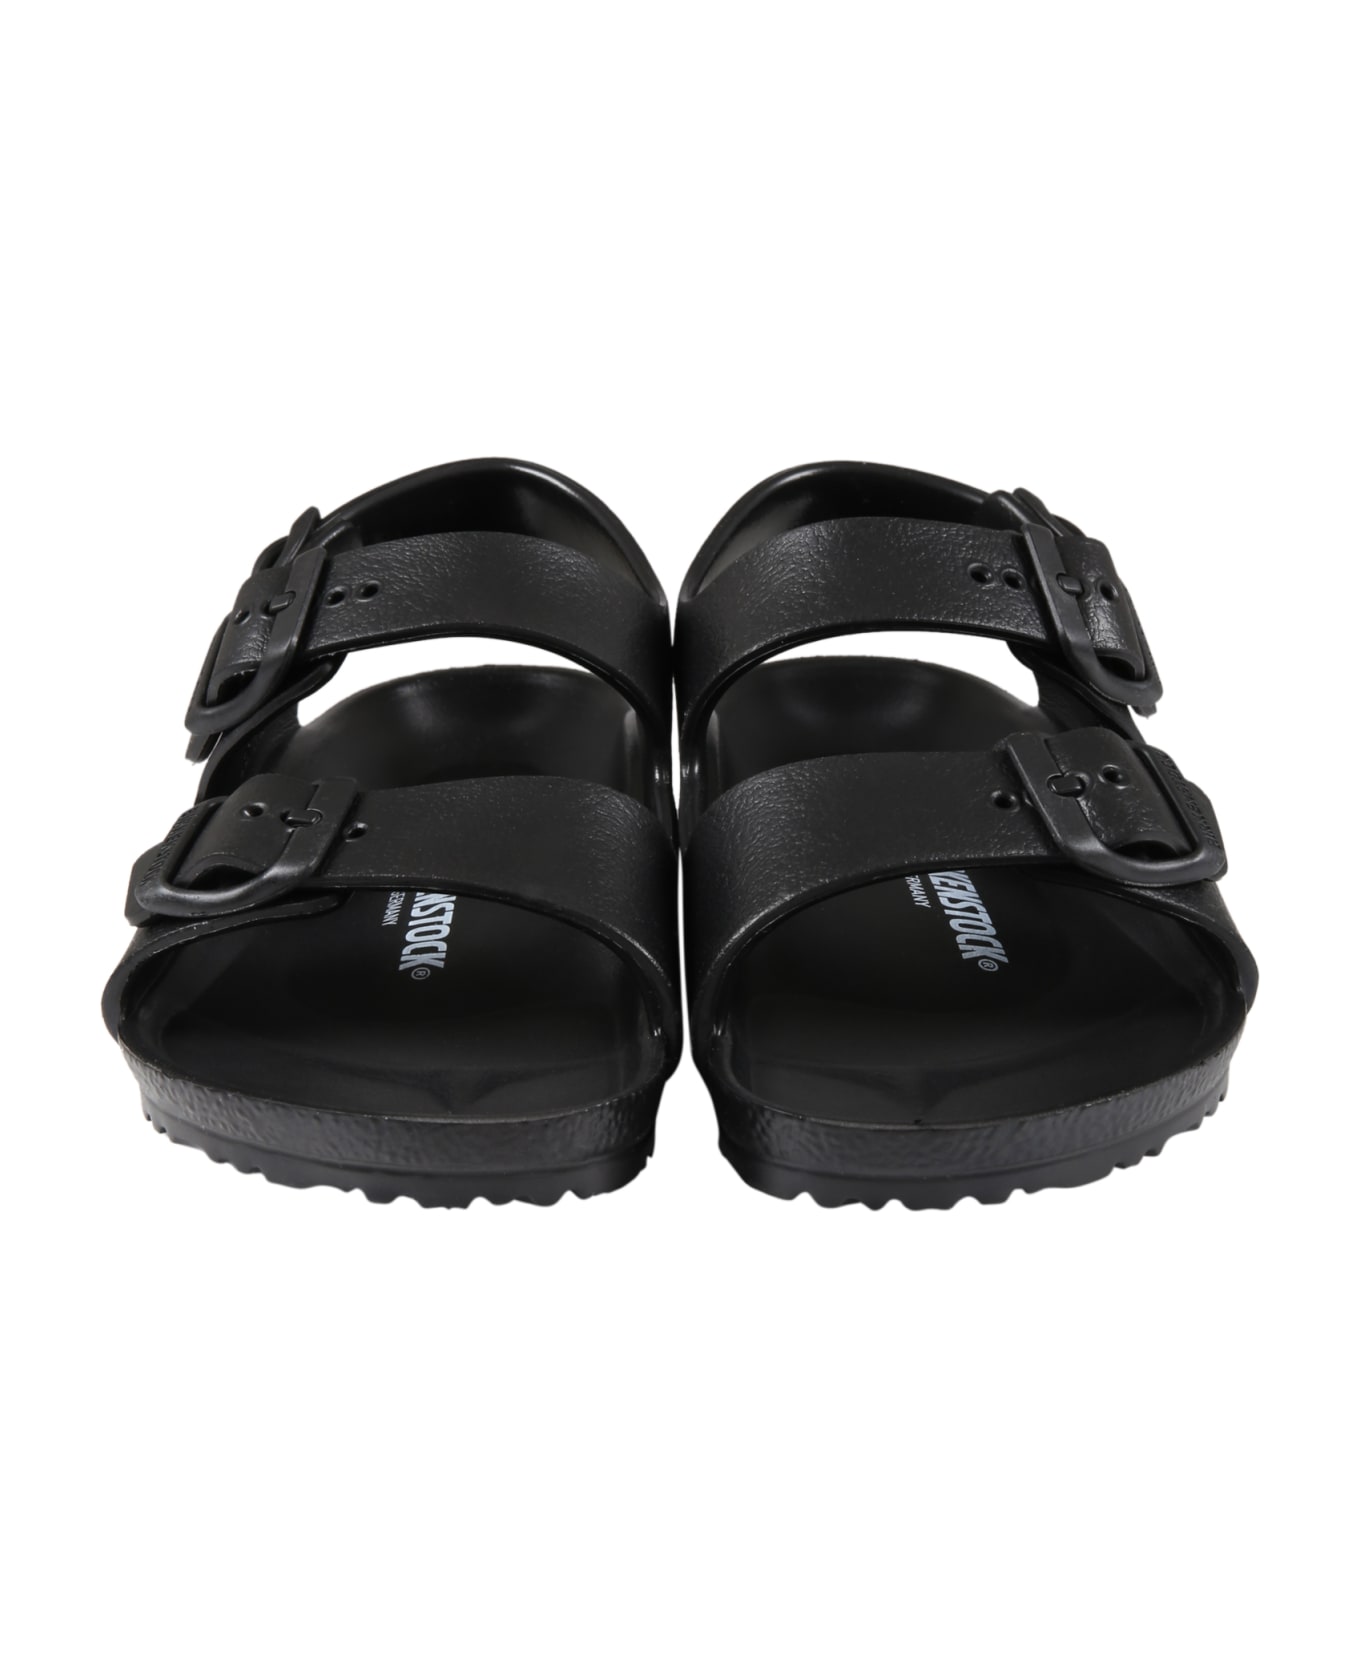 Birkenstock Black Sandals For Kids With Logo - Black